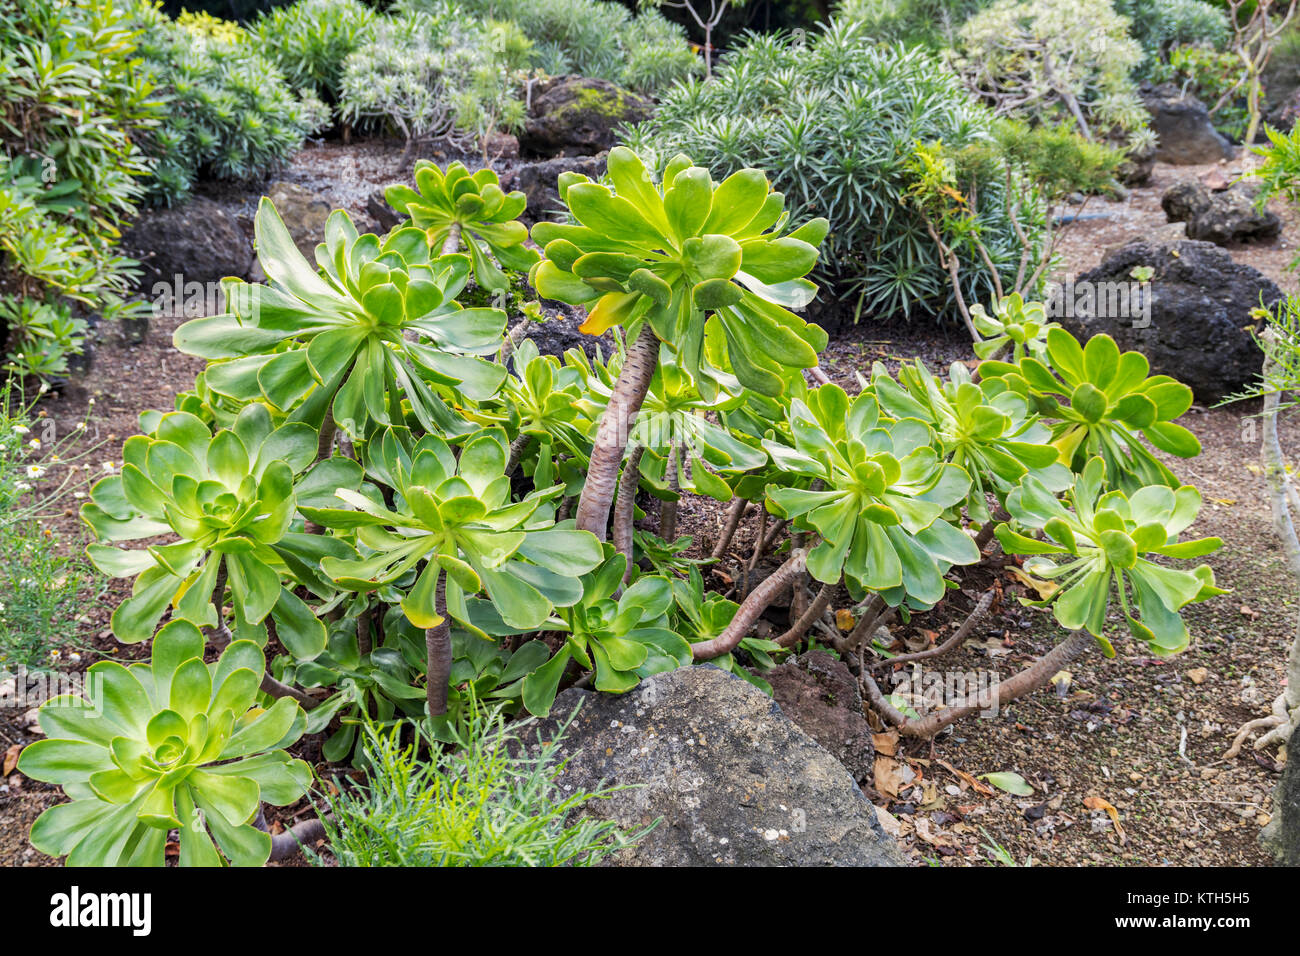 Magnifique rosette de aeonium undulatum avec de magnifiques feuilles vertes, plante sauvage endémique des îles de la Grande Canarie Banque D'Images